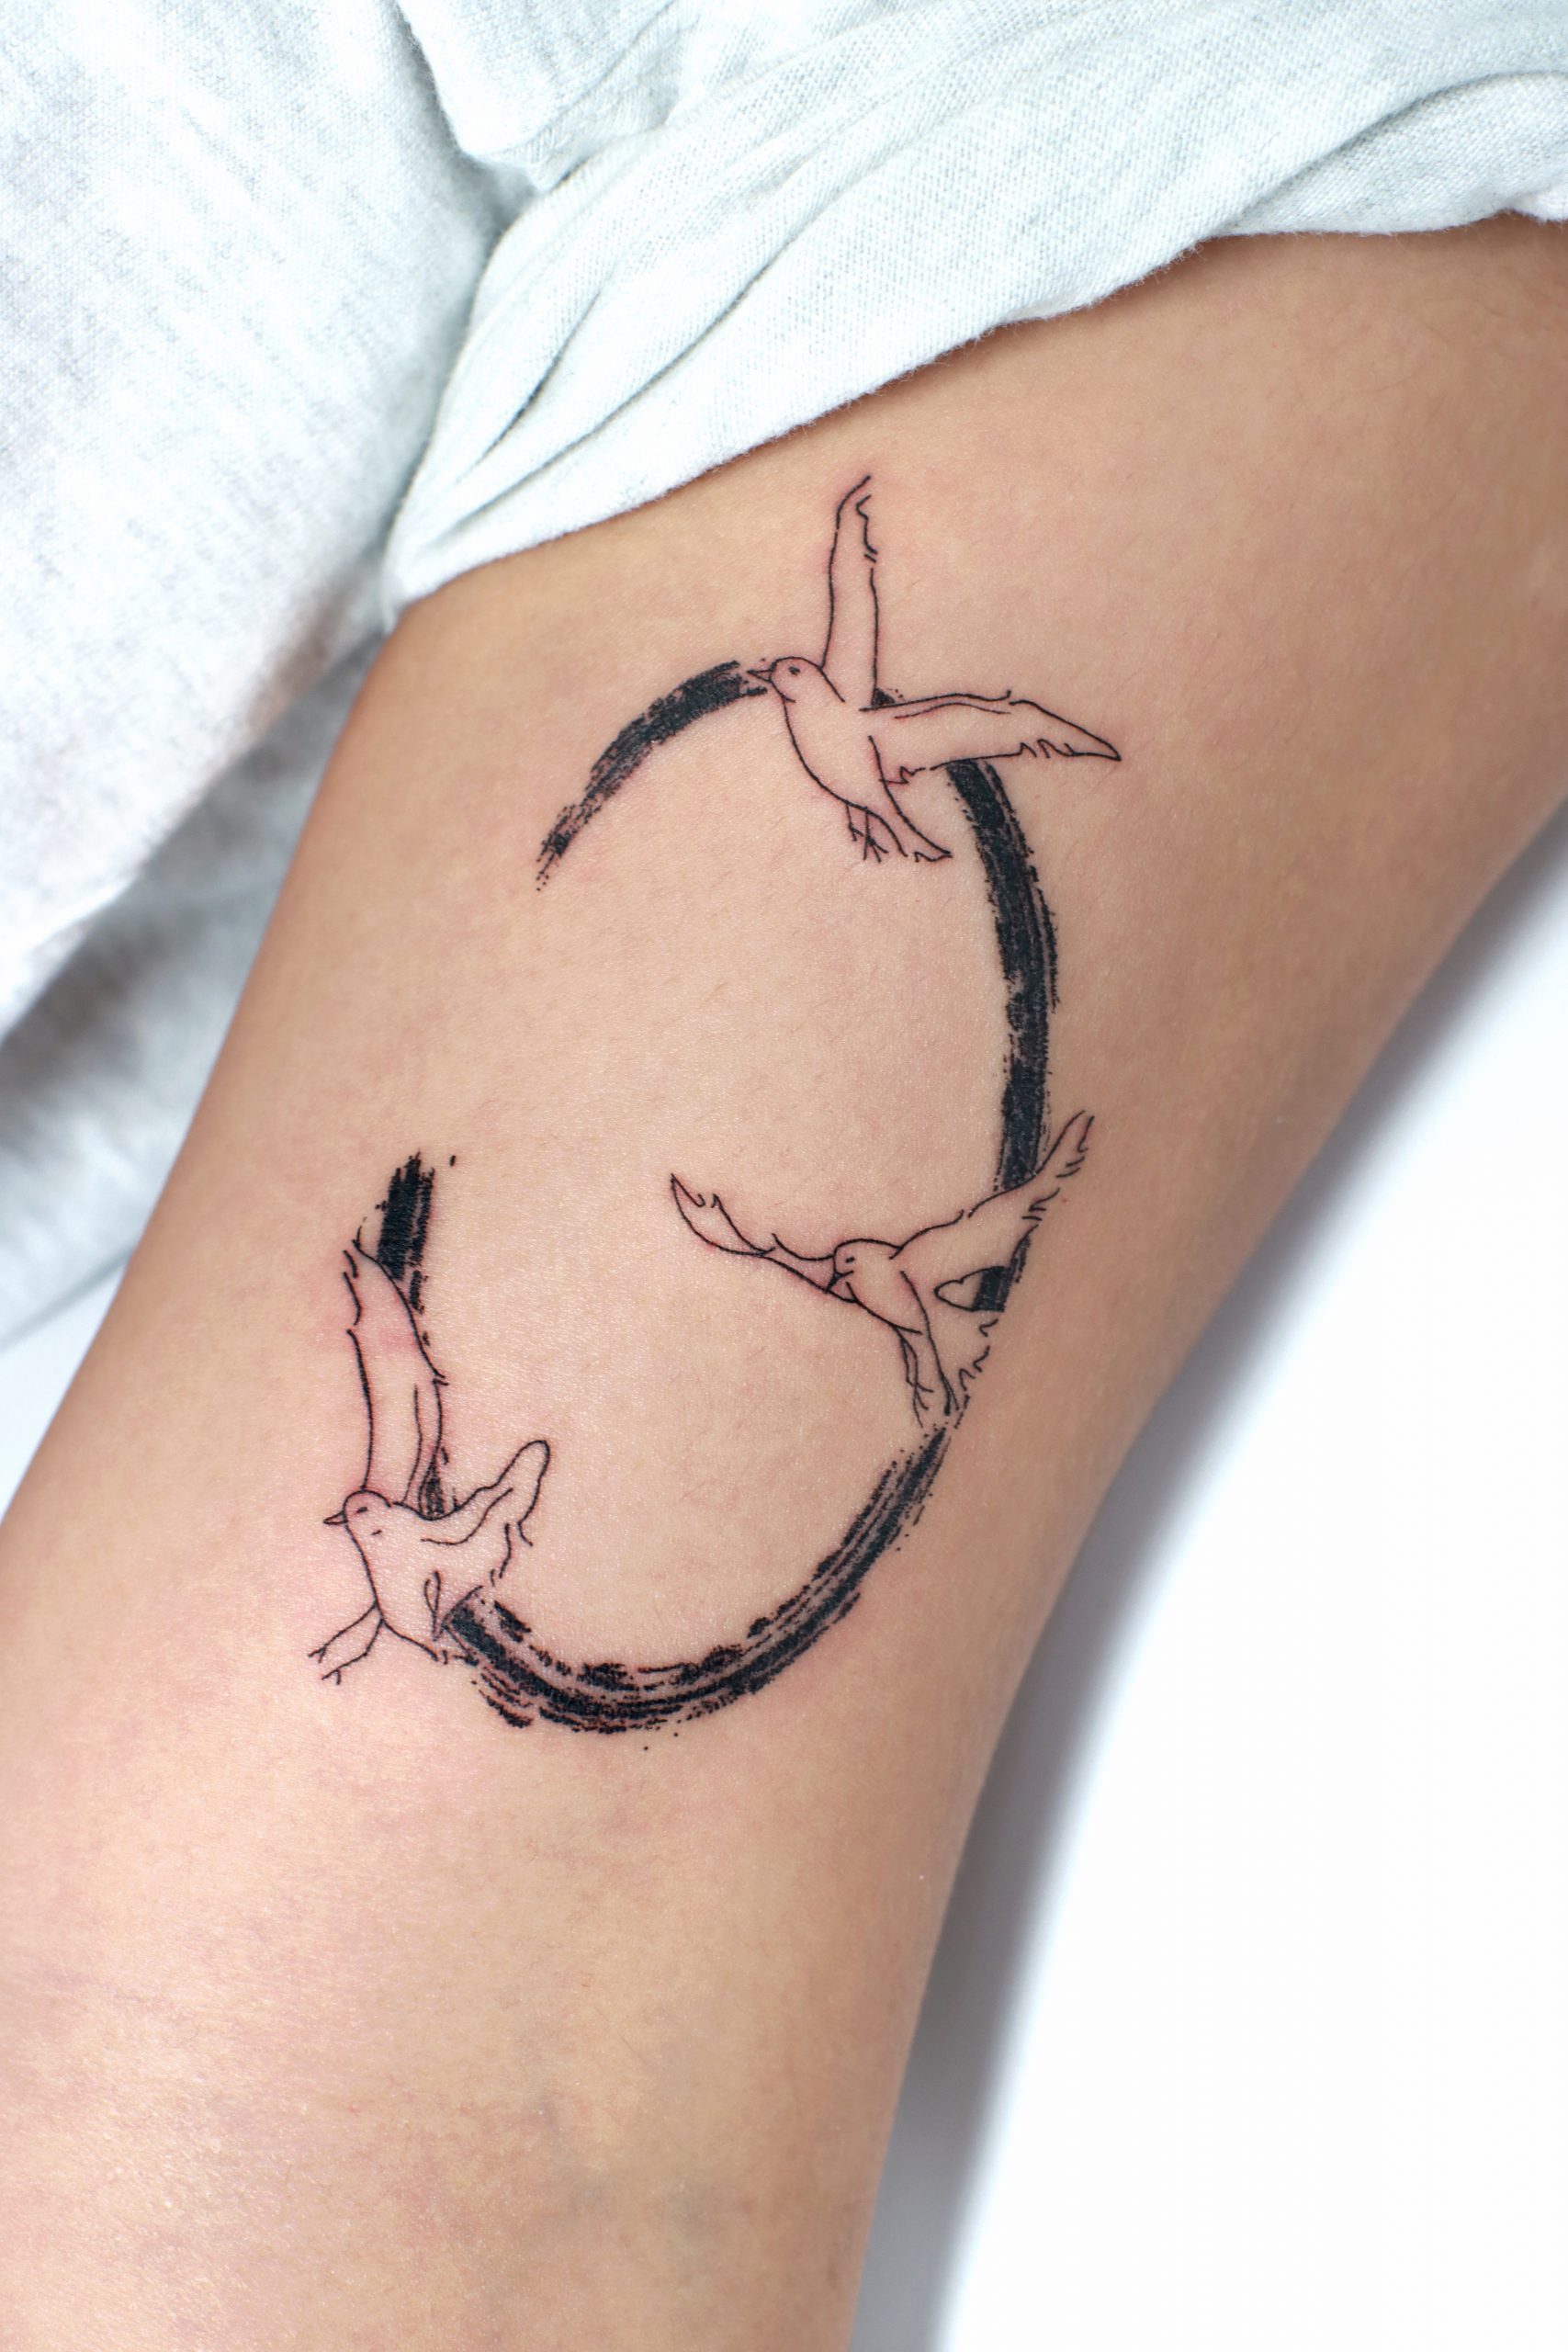 100 Of The Best Small Tattoos - Tattoo Insider | Minimalist tattoo, Cool small  tattoos, Tasteful tattoos